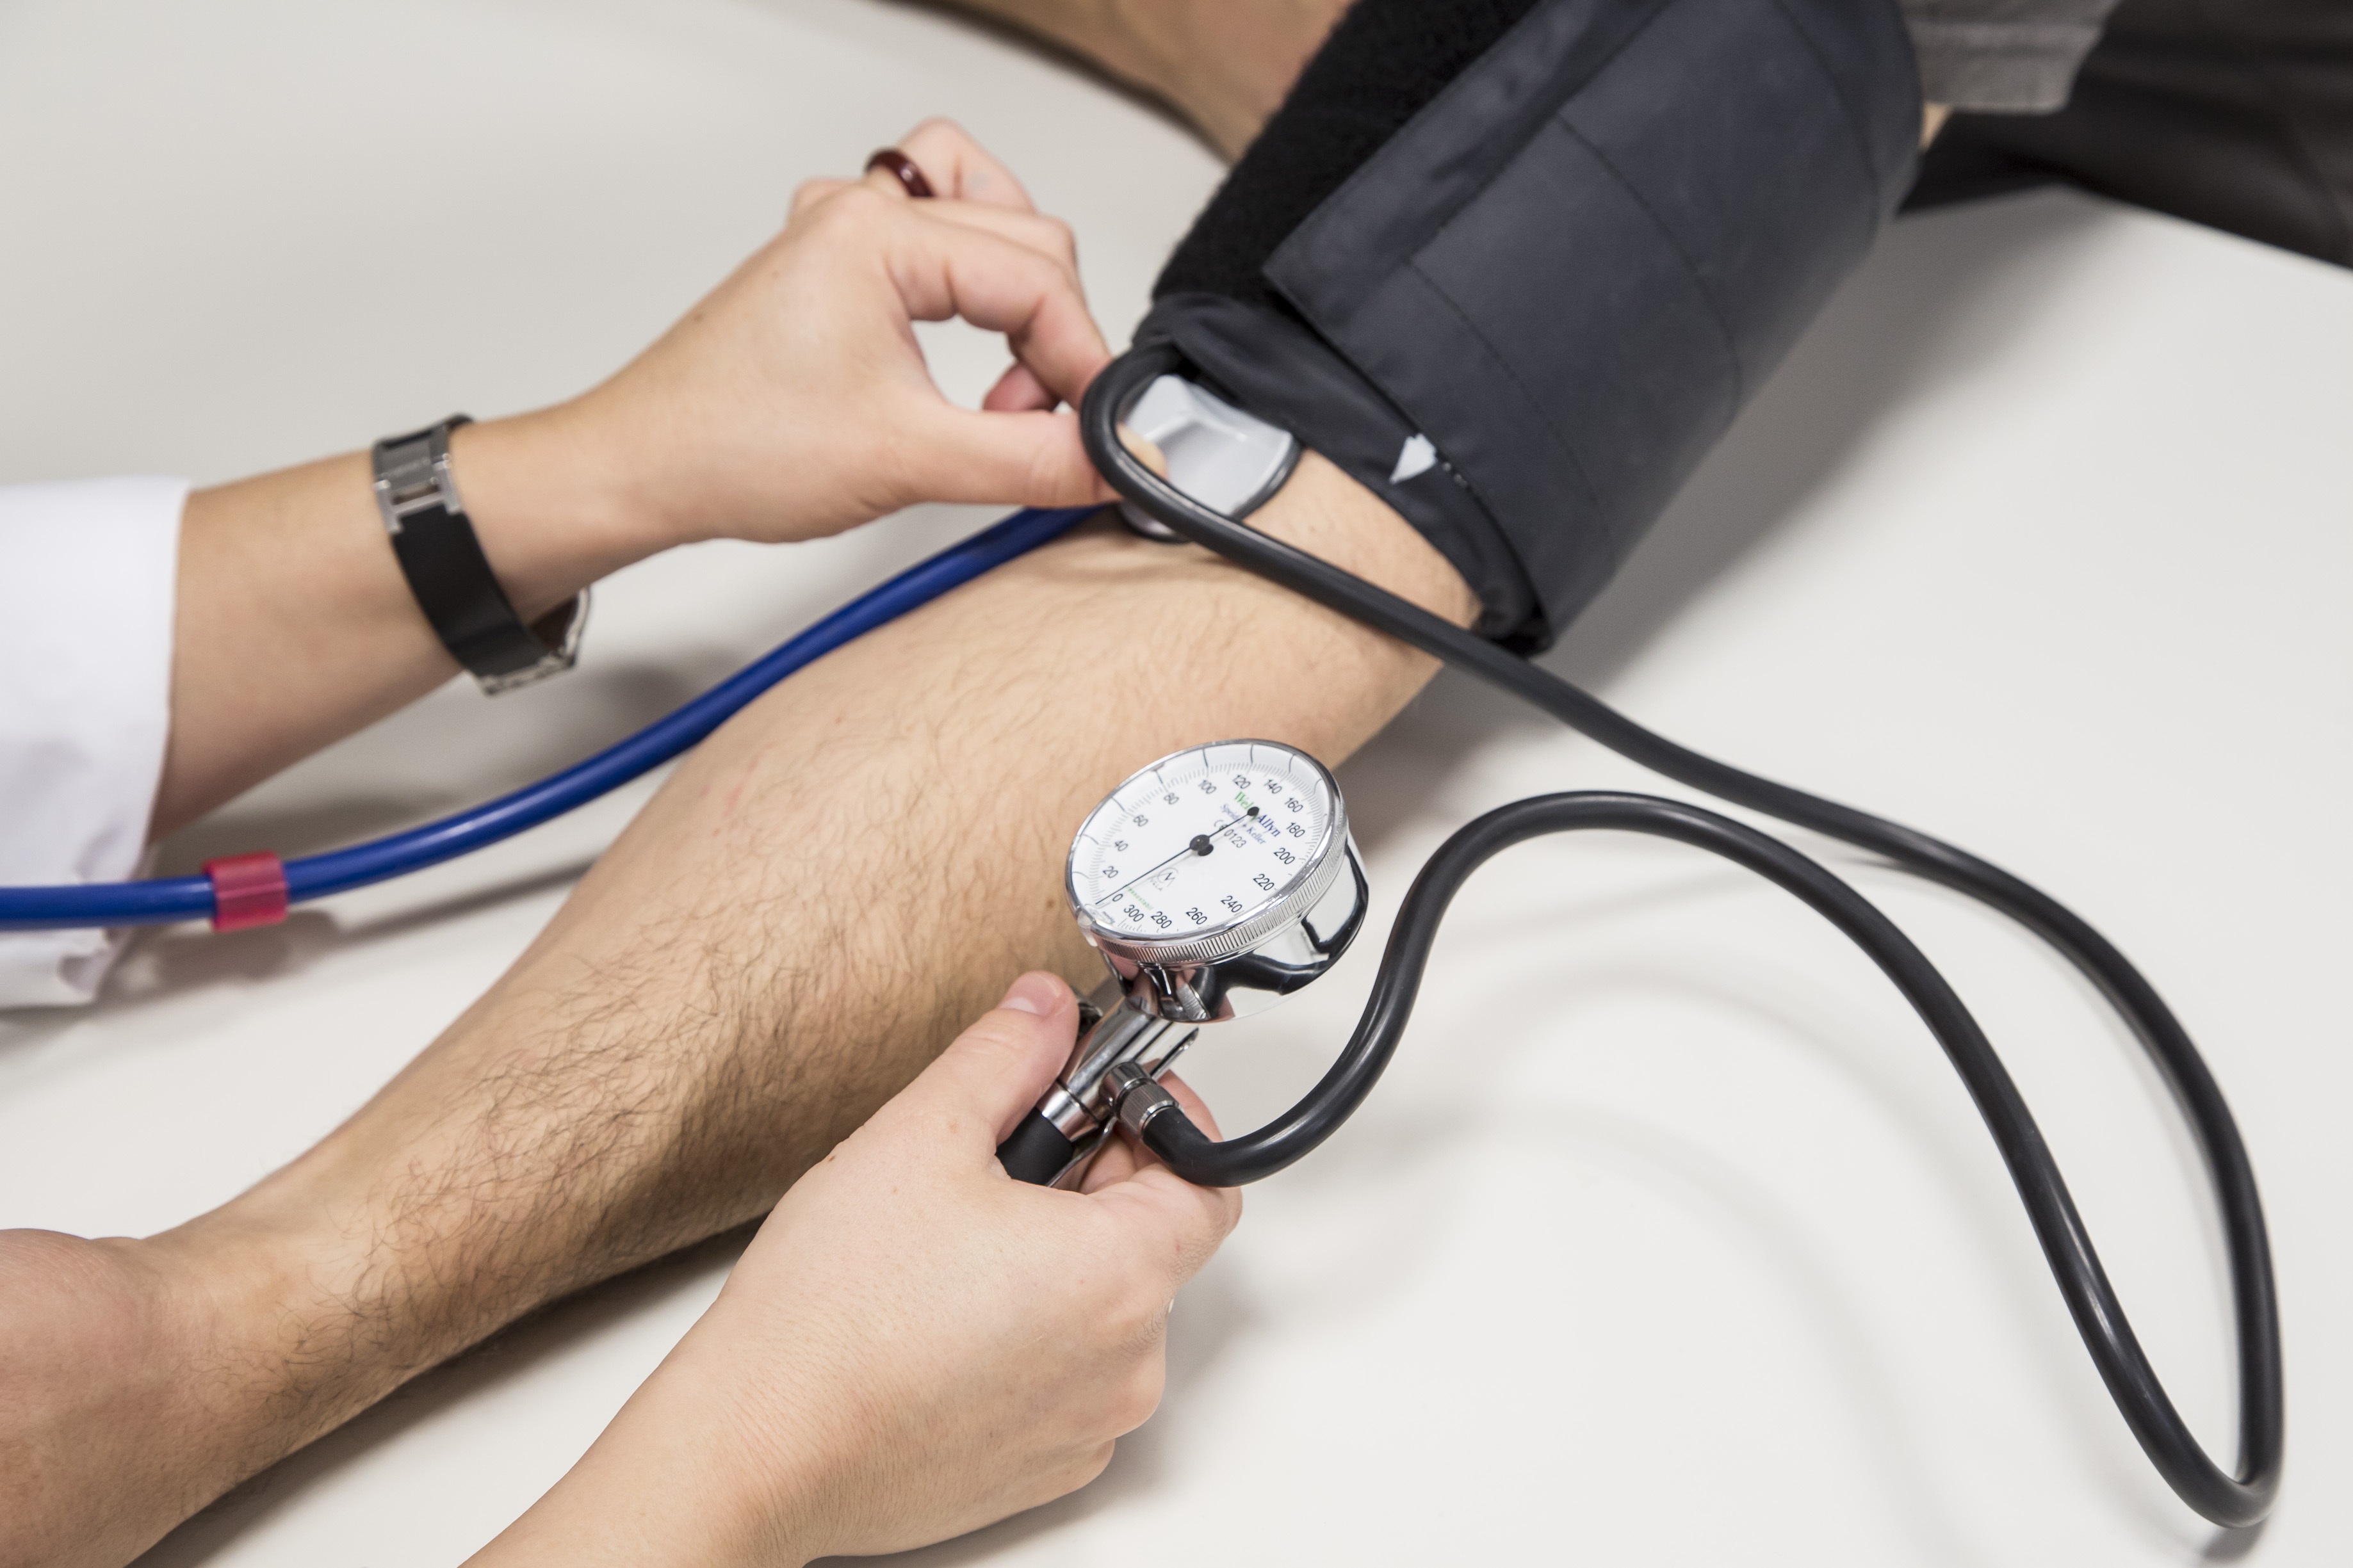 El avance de la hipertensión arterial provoca daños en órganos vitales y graves riesgos para la salud